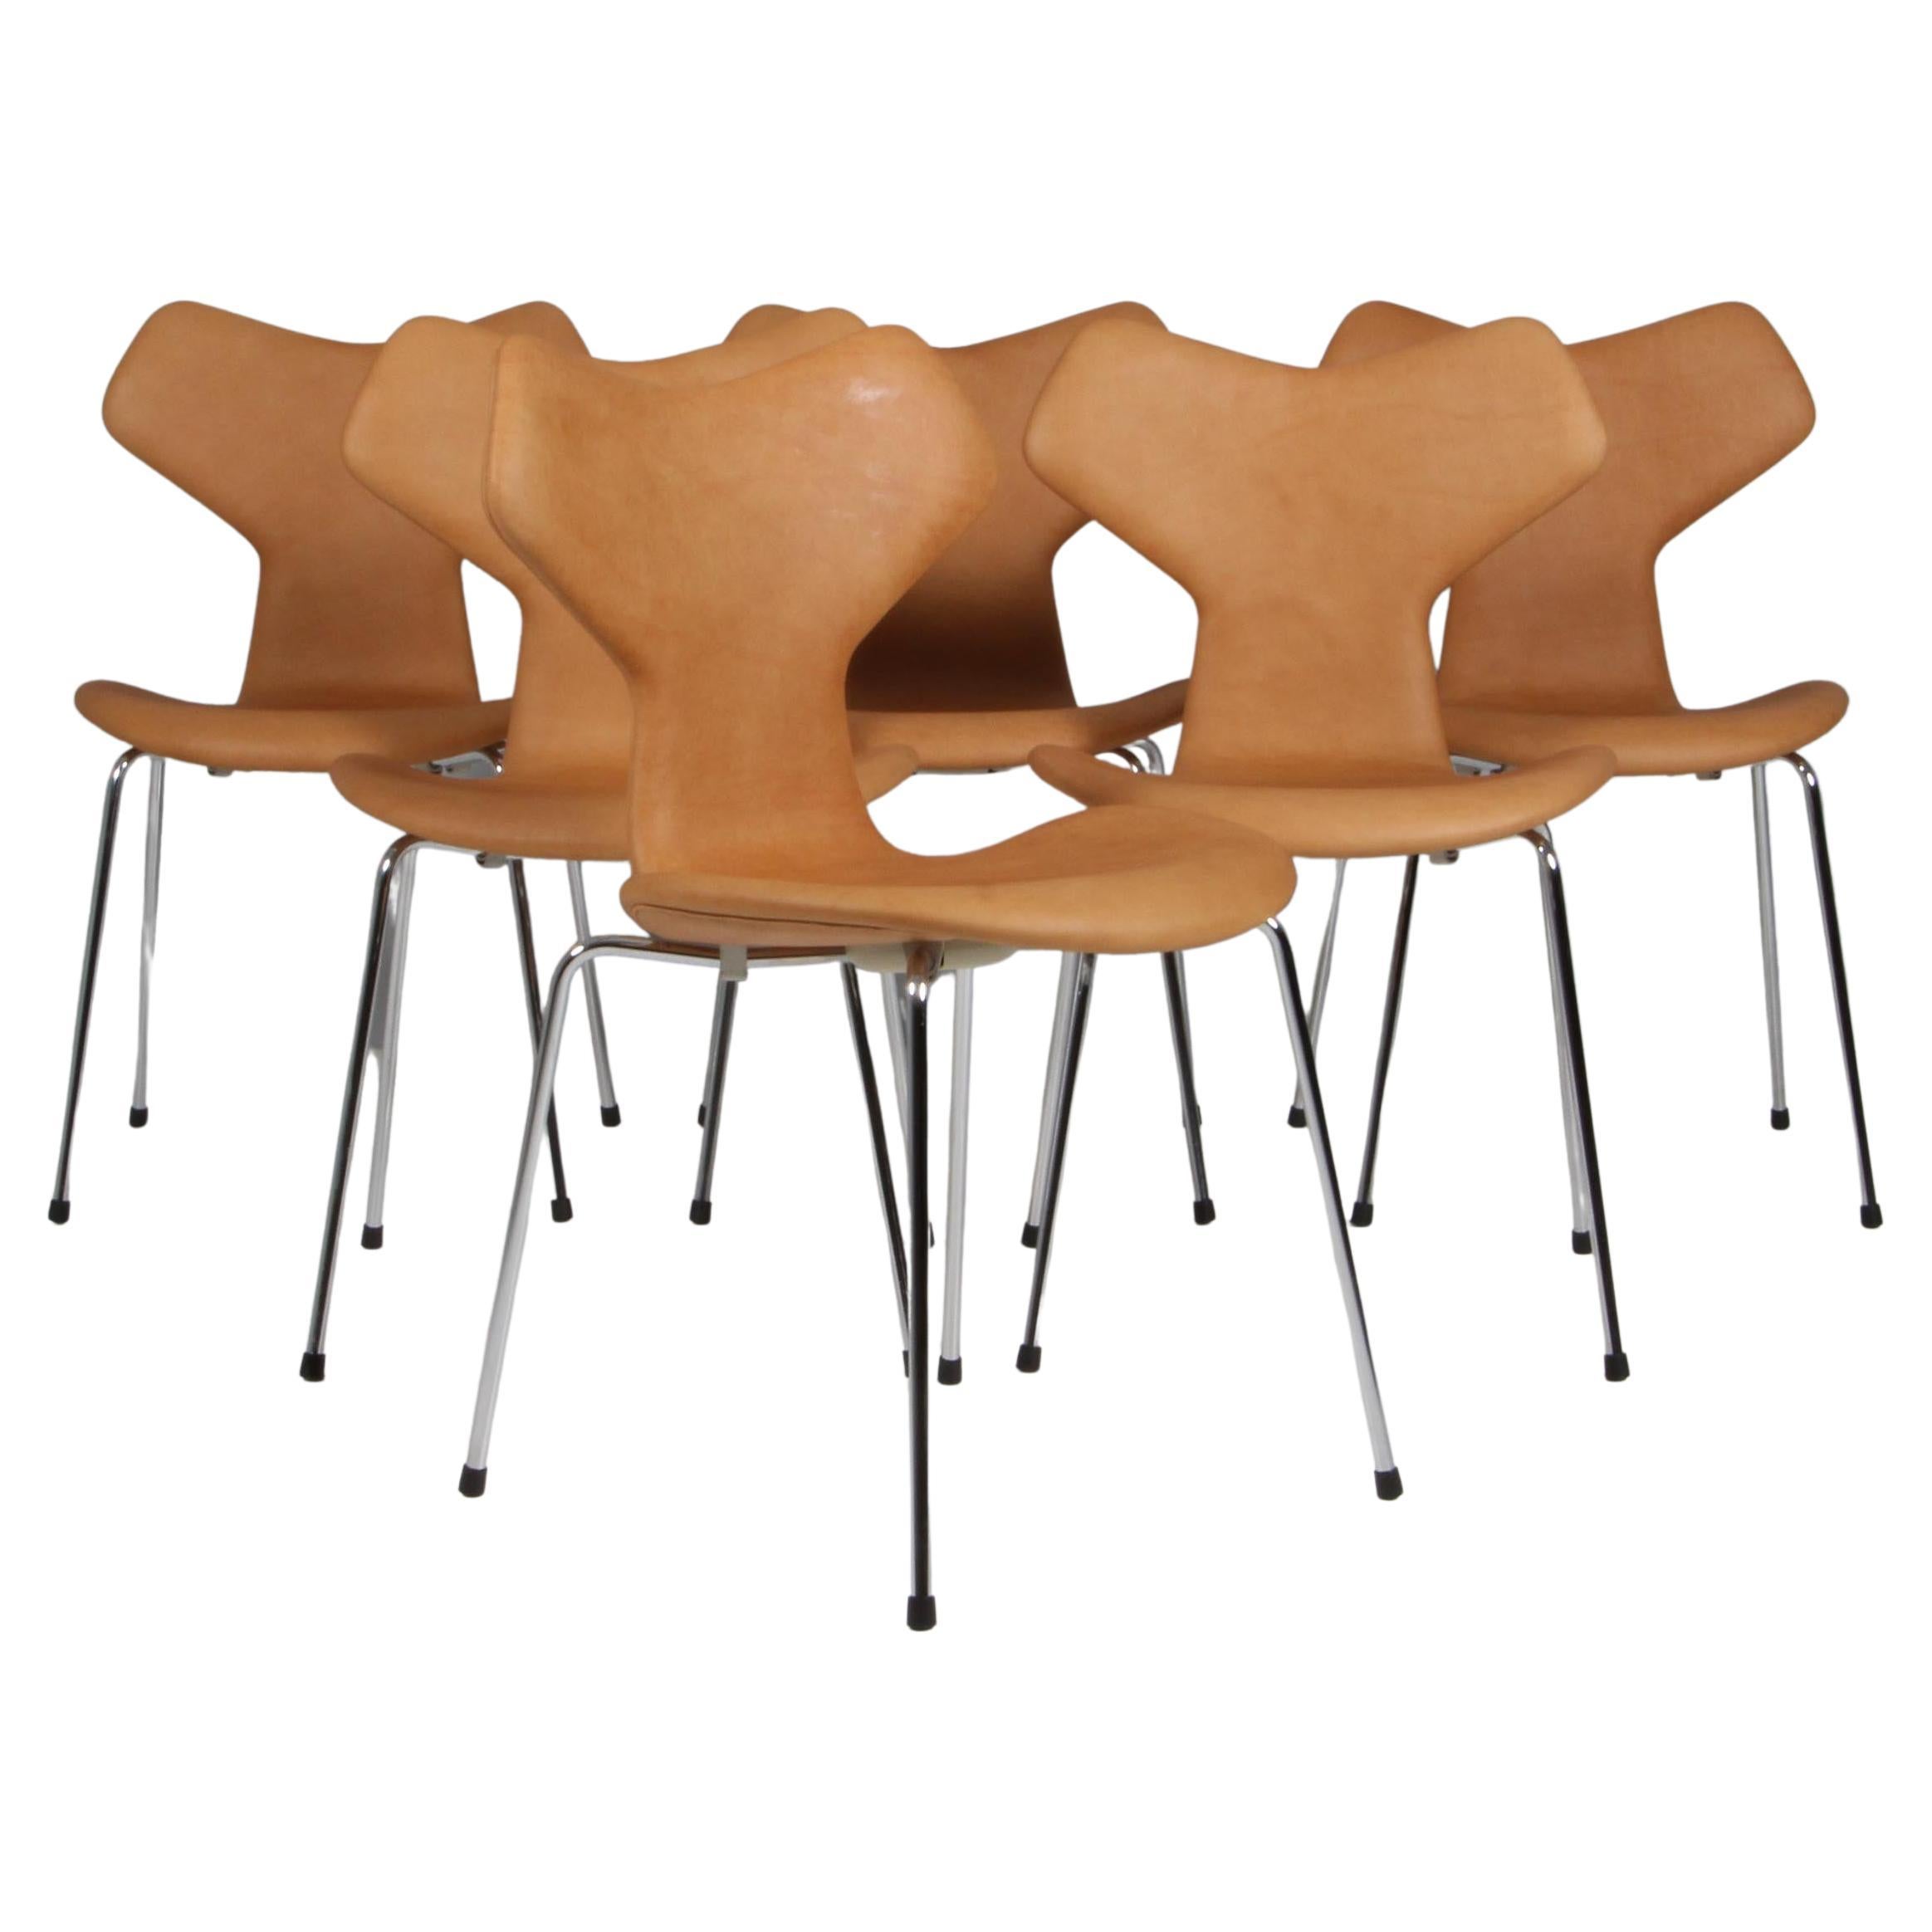 Arne Jacobsen Dining Chair, model Grand Prix model 3130